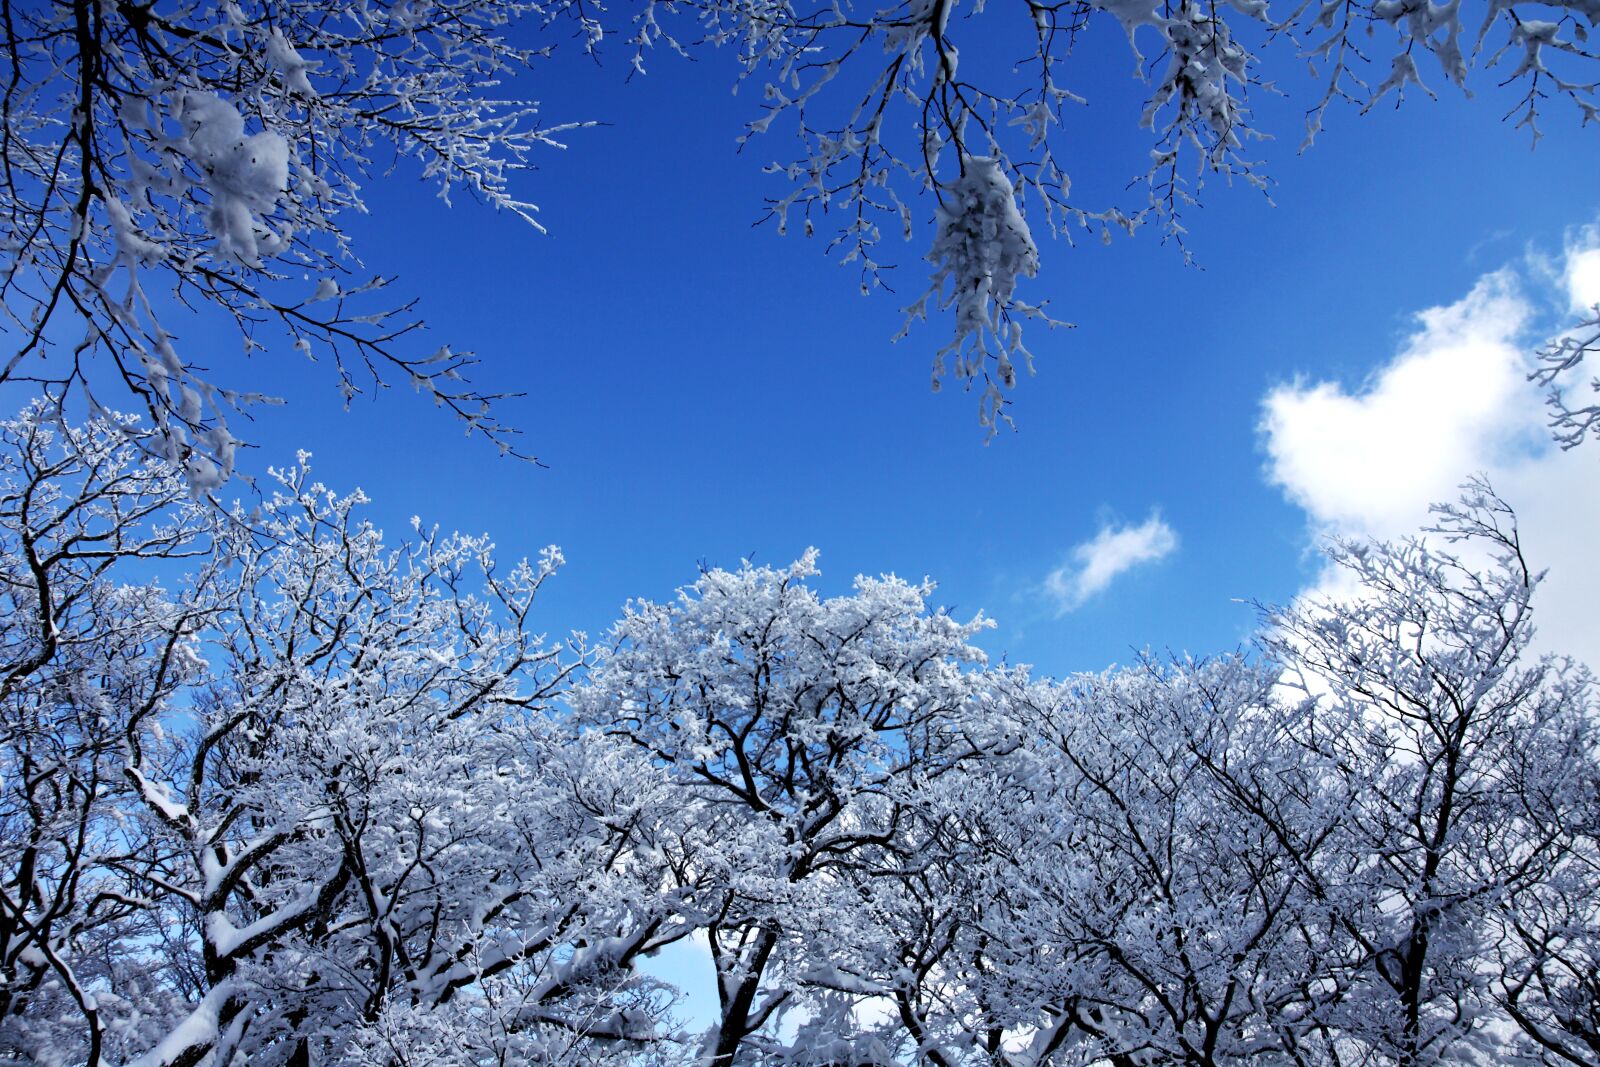 Canon EOS 50D sample photo. "Sky, wood, snow" photography